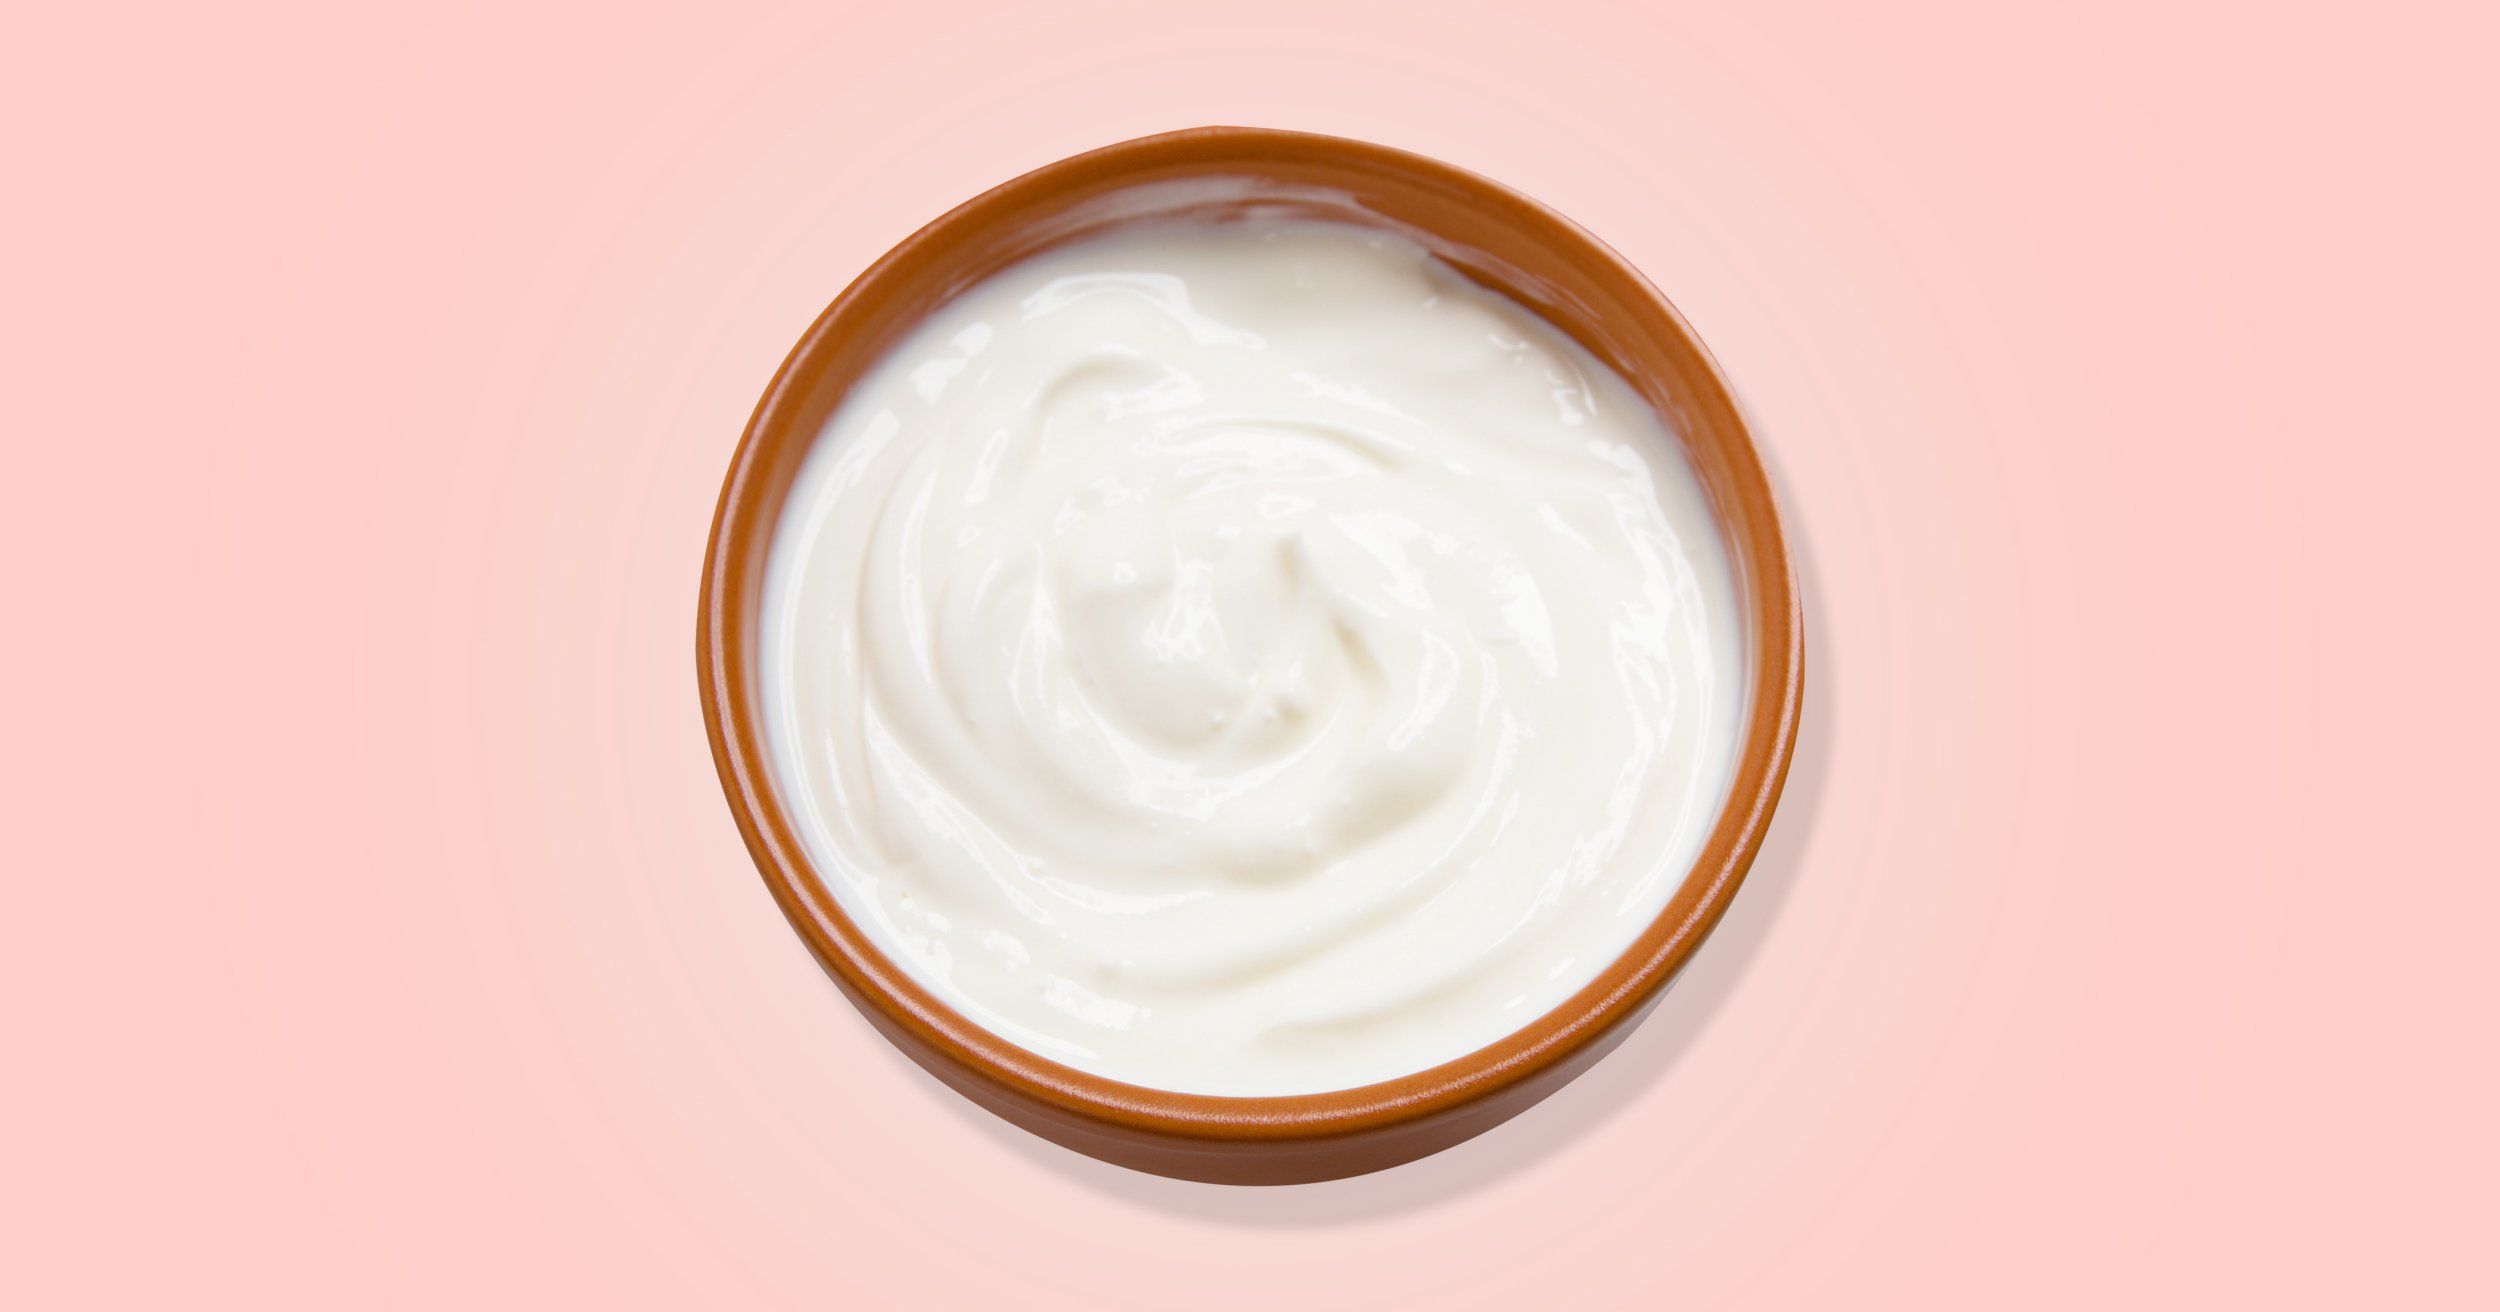 Antifungal cream for vagina